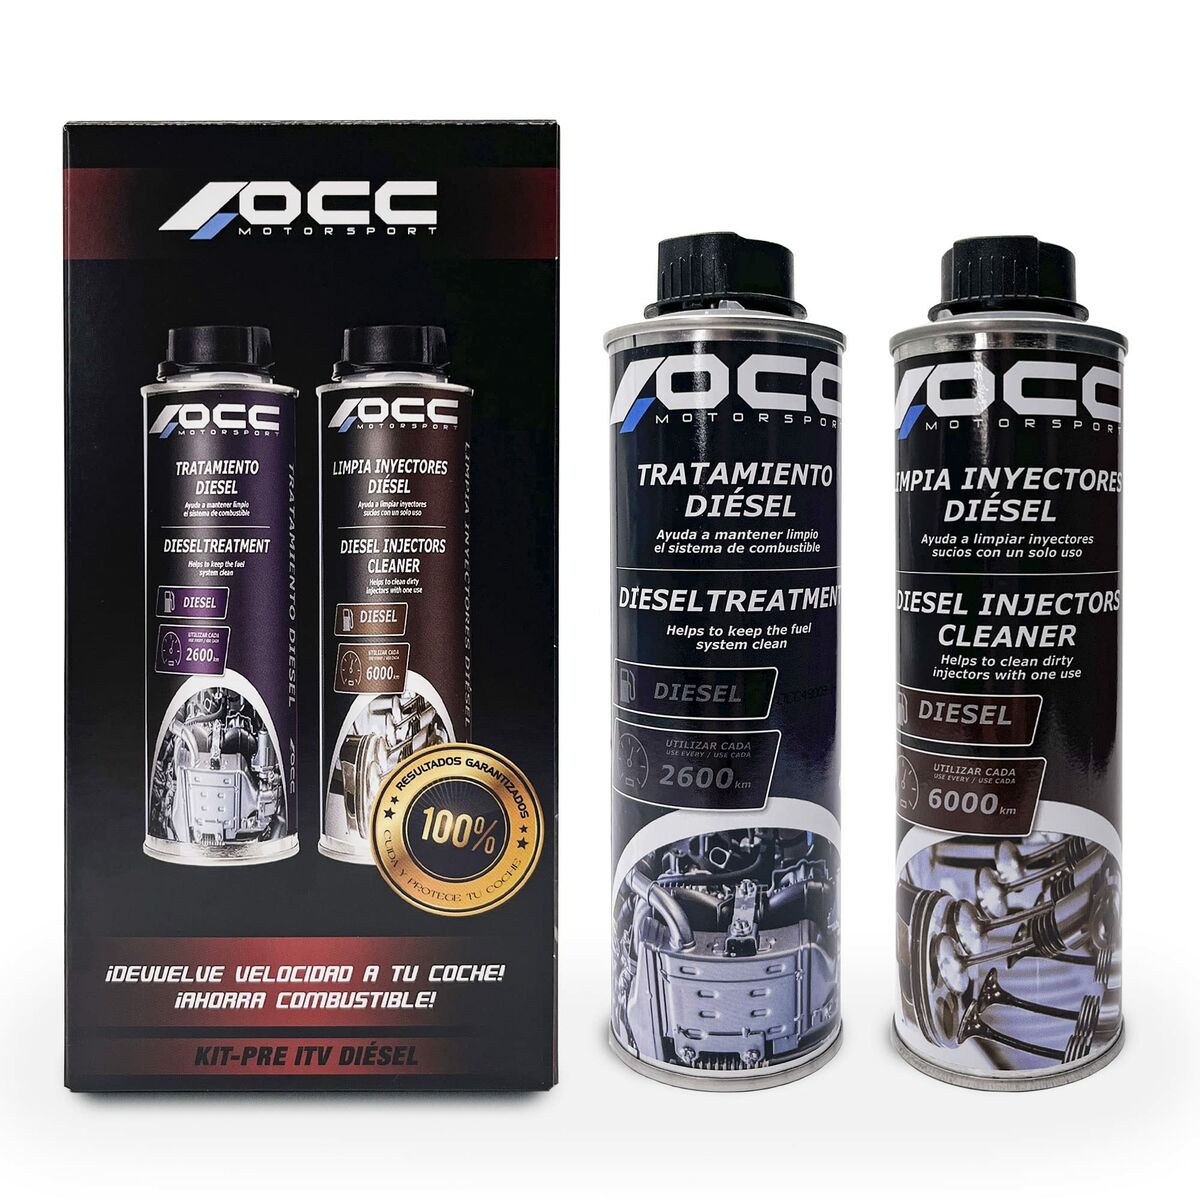 Additif pour les moteurs Diesel OCC Motorsport ZOCCA0007